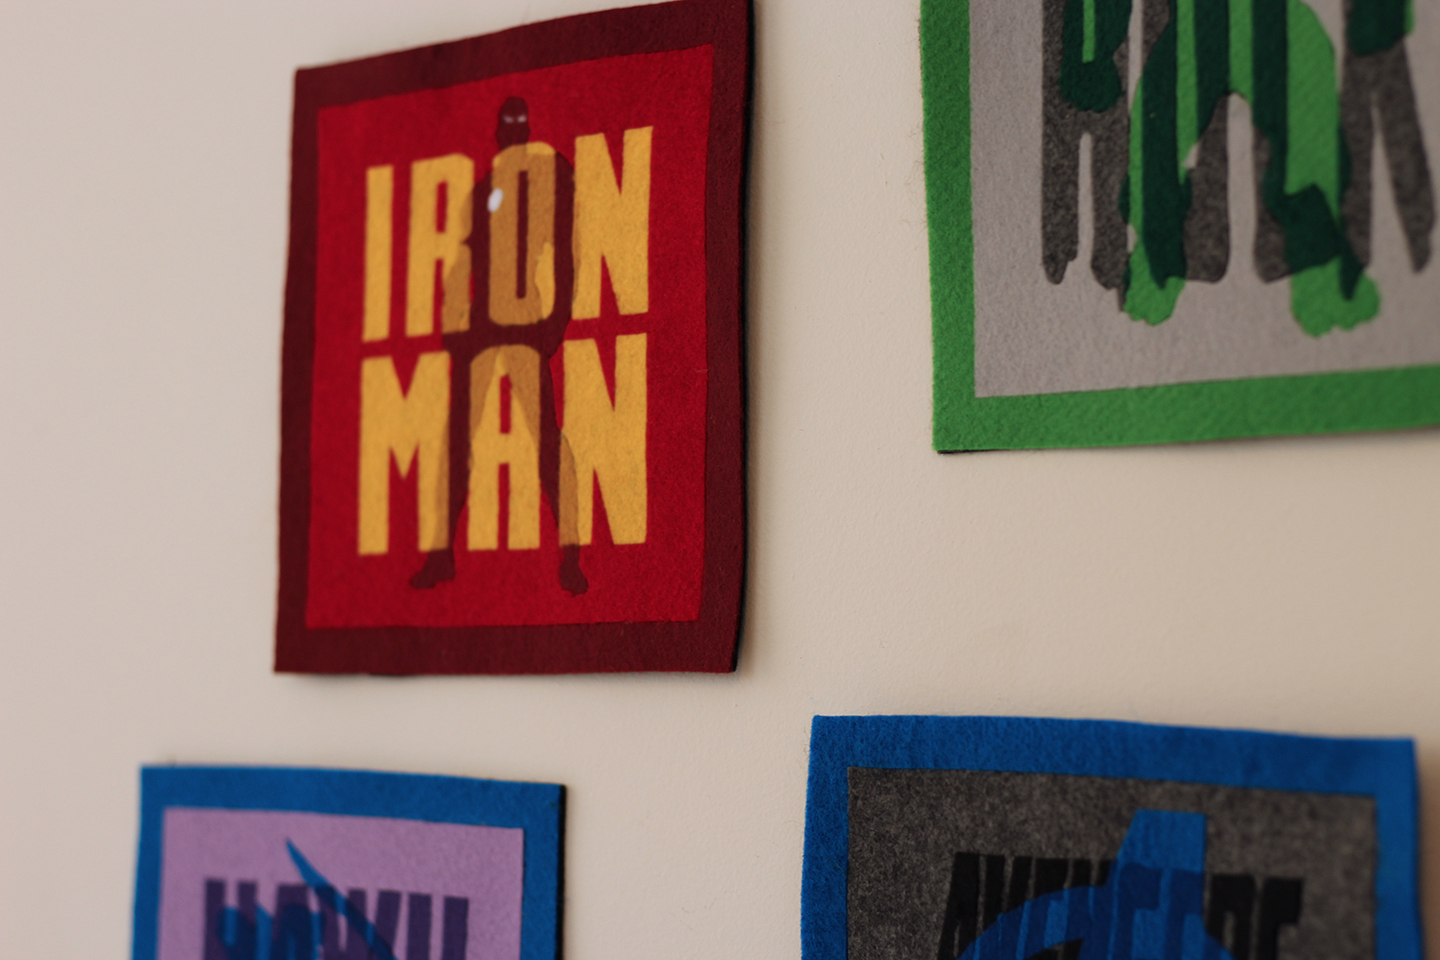 Group Iron Man Detail 1.jpg